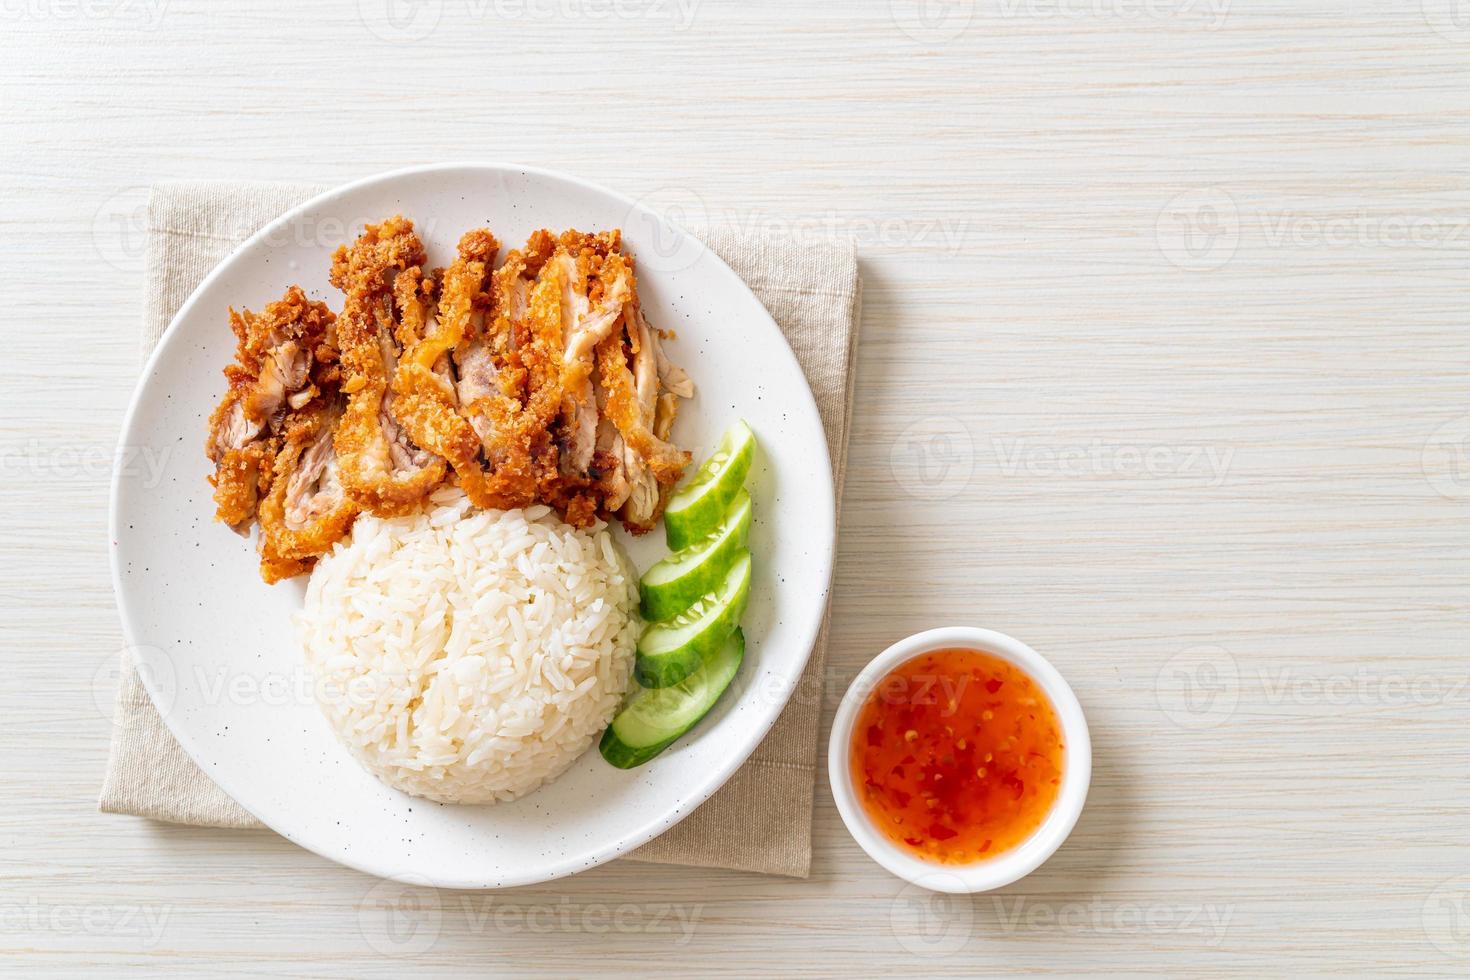 riz au poulet hainanais avec poulet frit photo